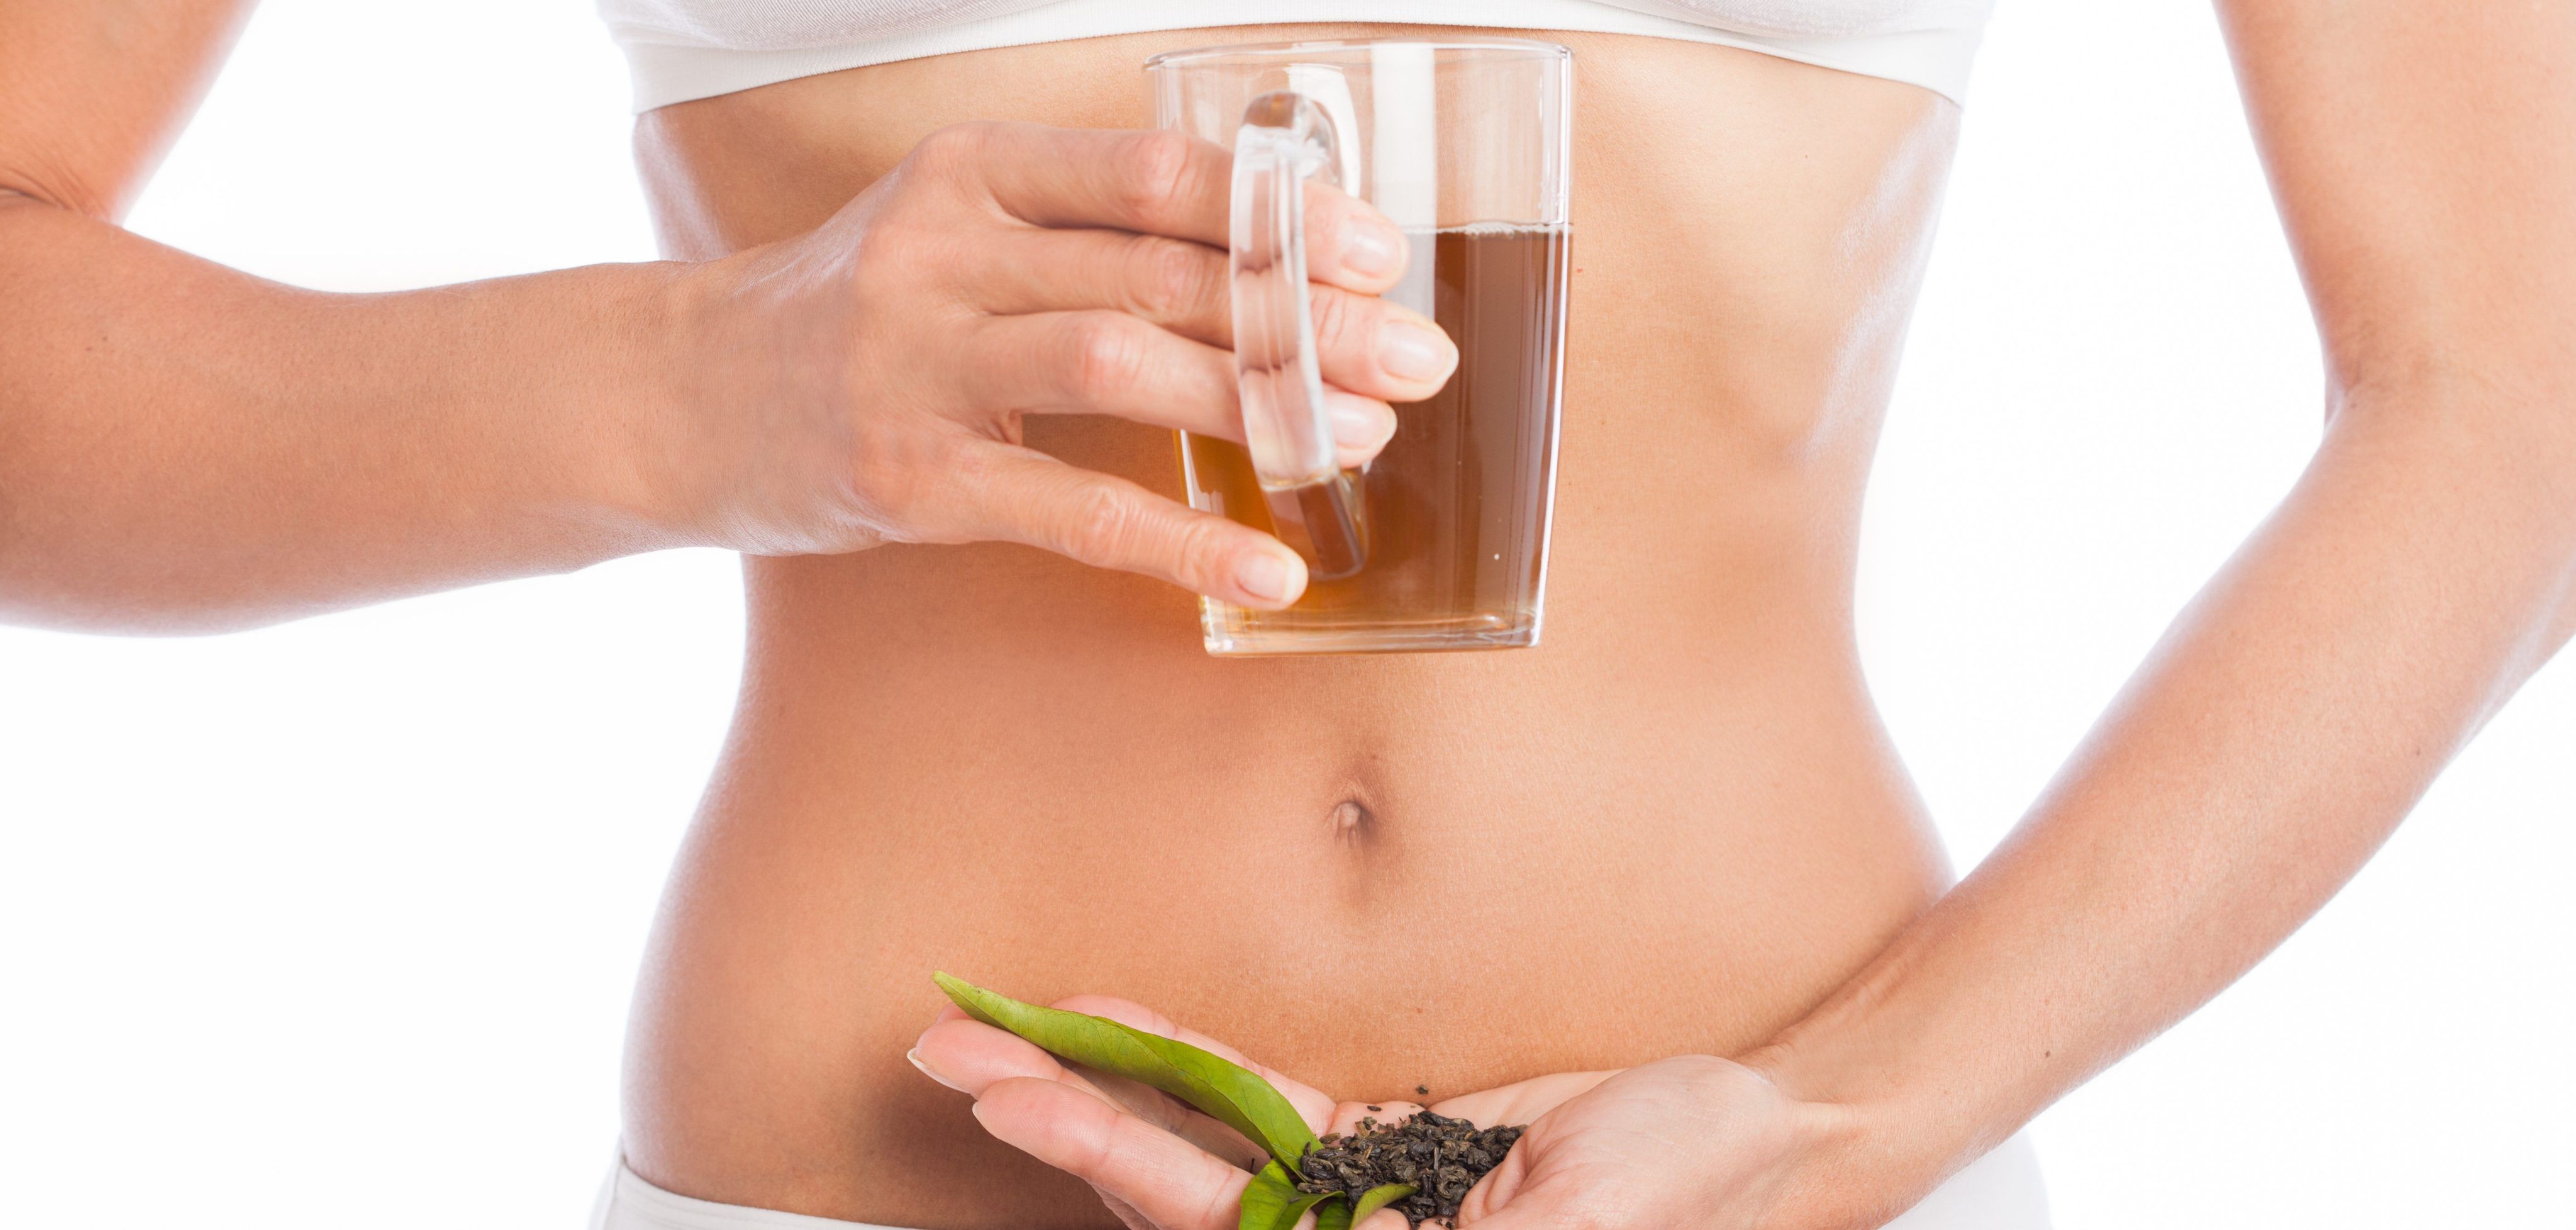 Remedio natural para quemar grasa y deshinchar el abdomen - Mejor con Salud